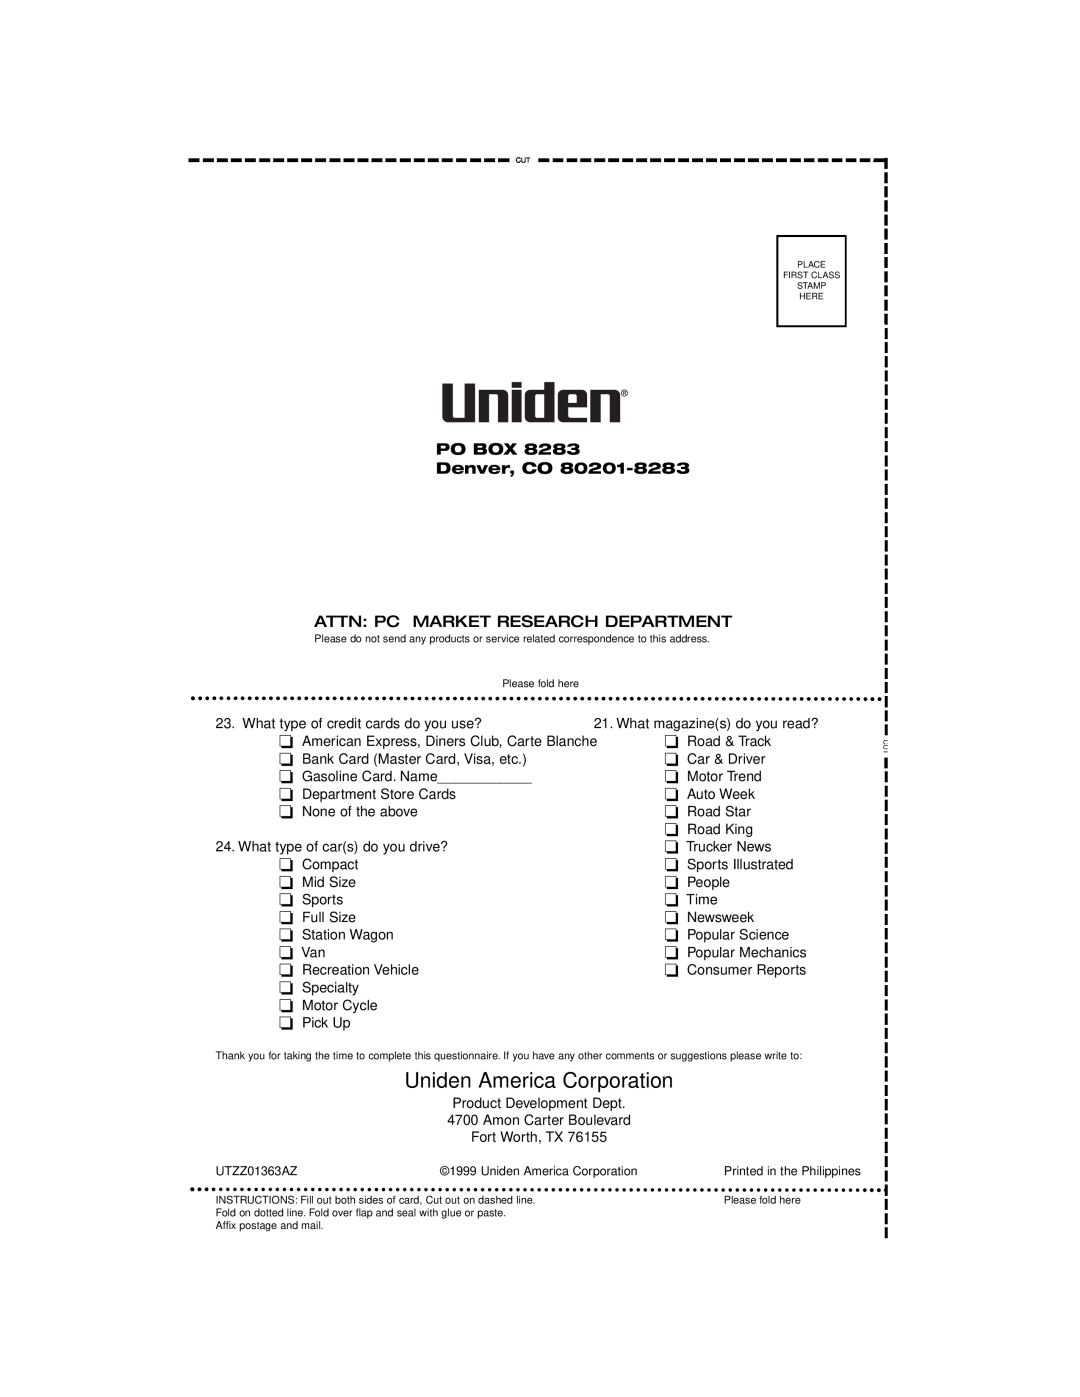 Uniden PRO 510XL manual Uniden America Corporation, PO BOX Denver, CO, Attn: Pc Market Research Department 